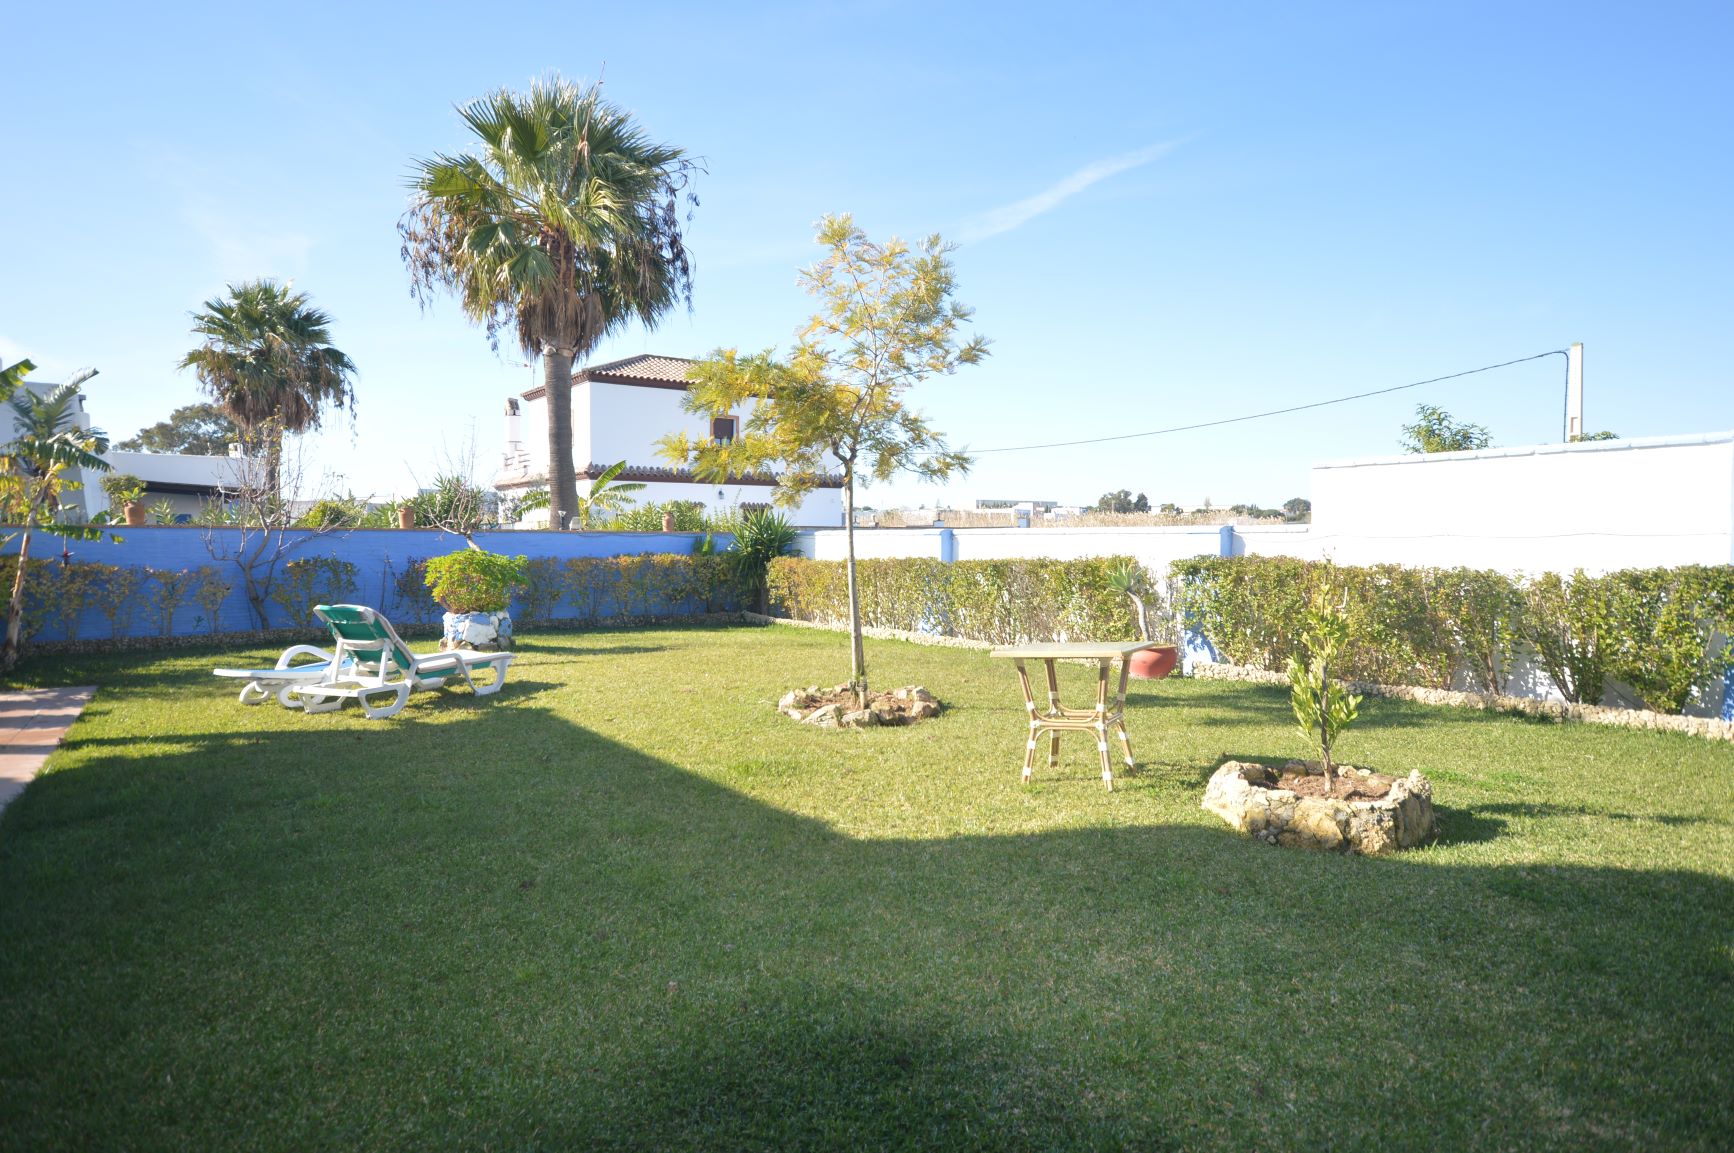 Complejo rural El Arroyo Casa 2 | Casa rural con piscina en pequeño complejo en Conil